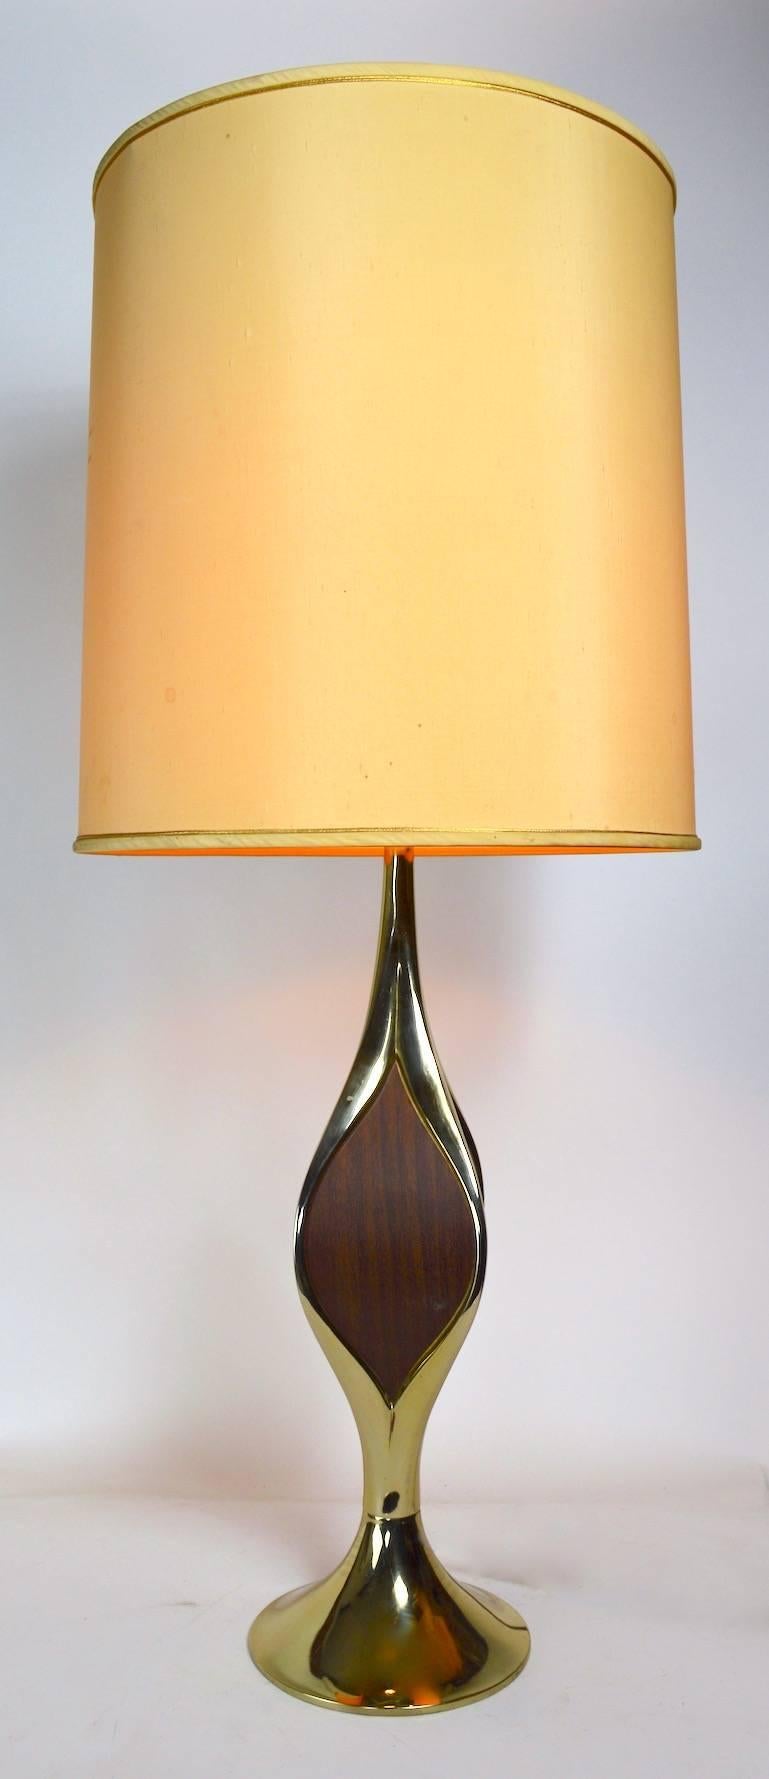 Klassische Gerald Thurston für Lightolier Mid-Century Modern Tischlampe. Messingfarbenes Metall mit Holzimitateinsatz, auf tropfenförmigem Sockel. Funktionstüchtig, sauber, originaler Zustand, weist geringe kosmetische Abnutzungserscheinungen auf,